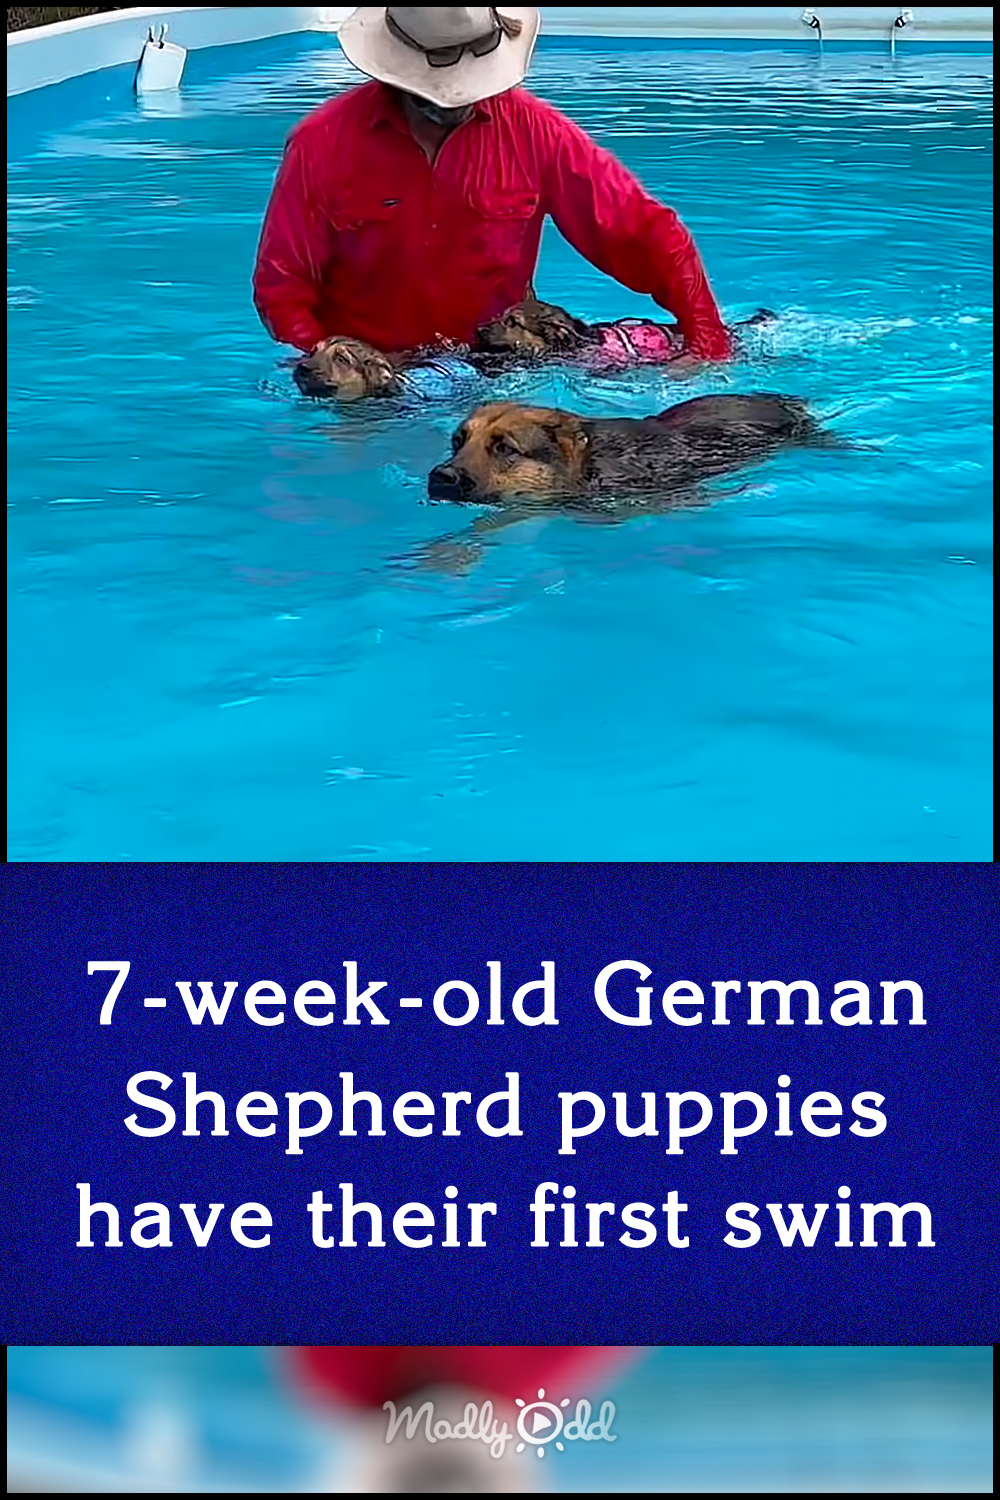 7-week-old German Shepherd puppies have their first swim